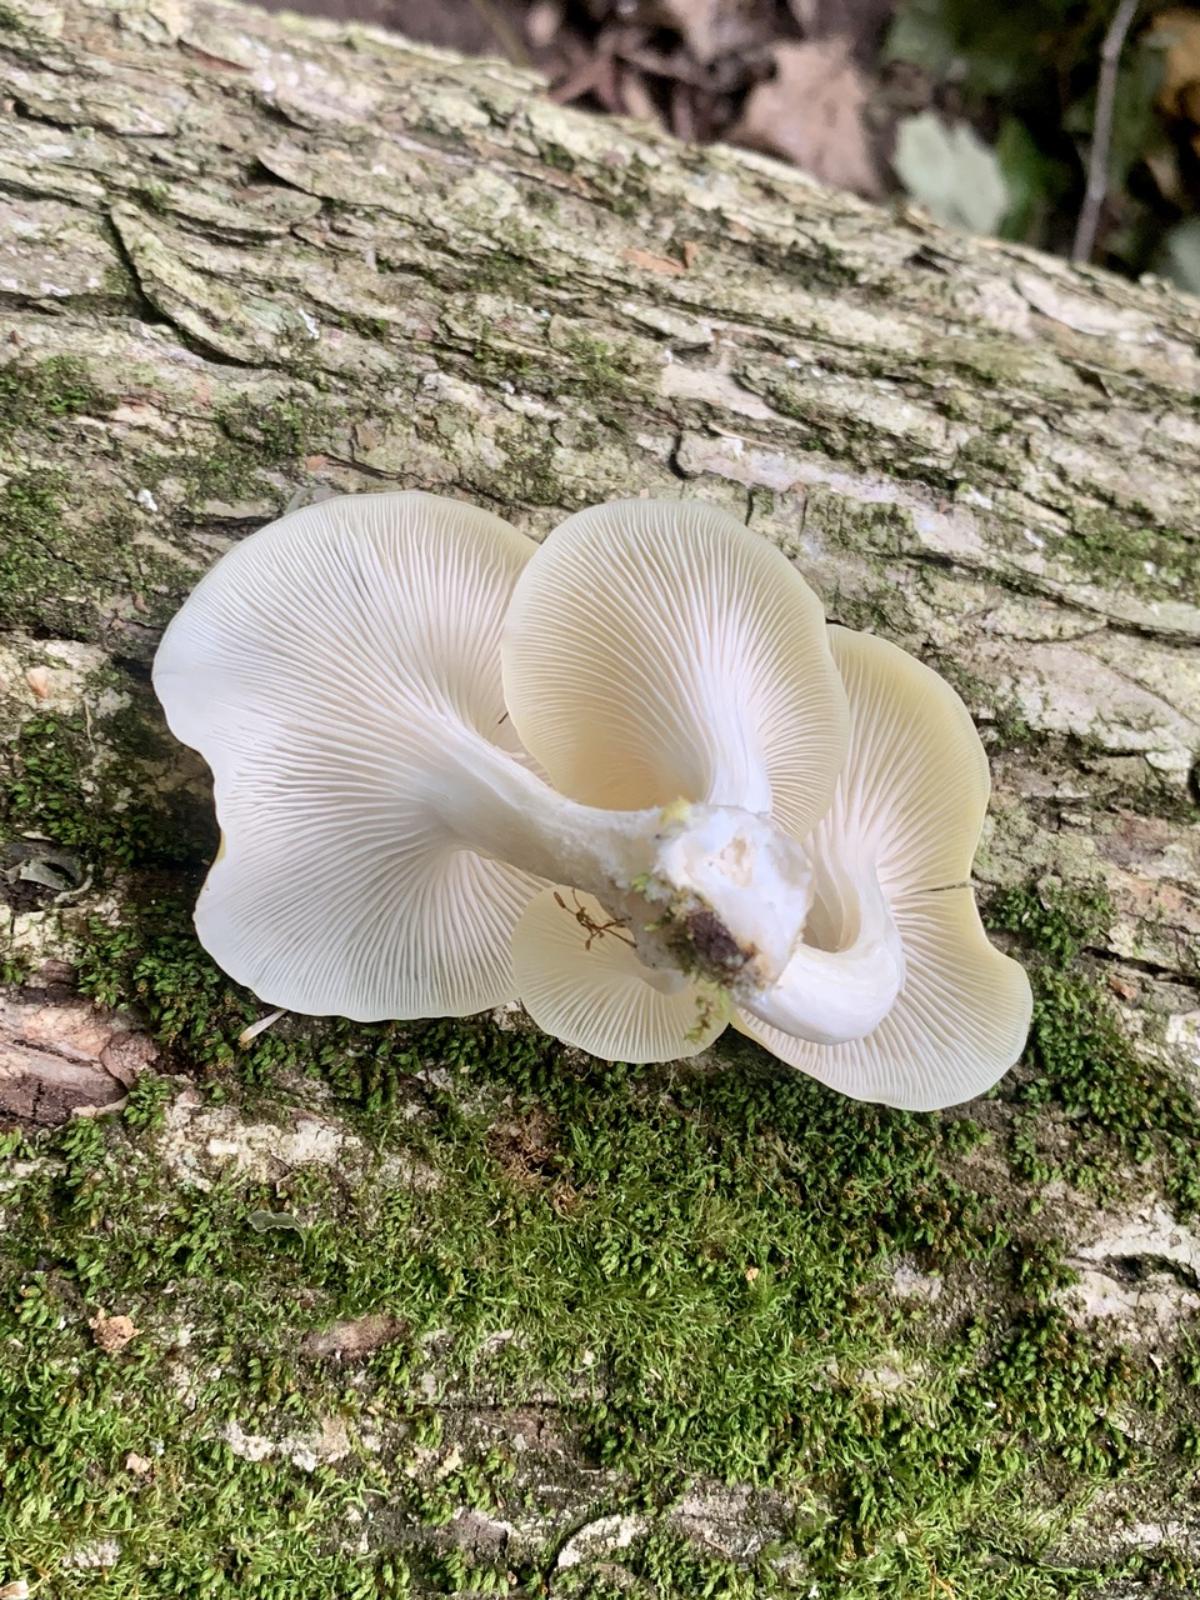 gills of golden oyster mushroom